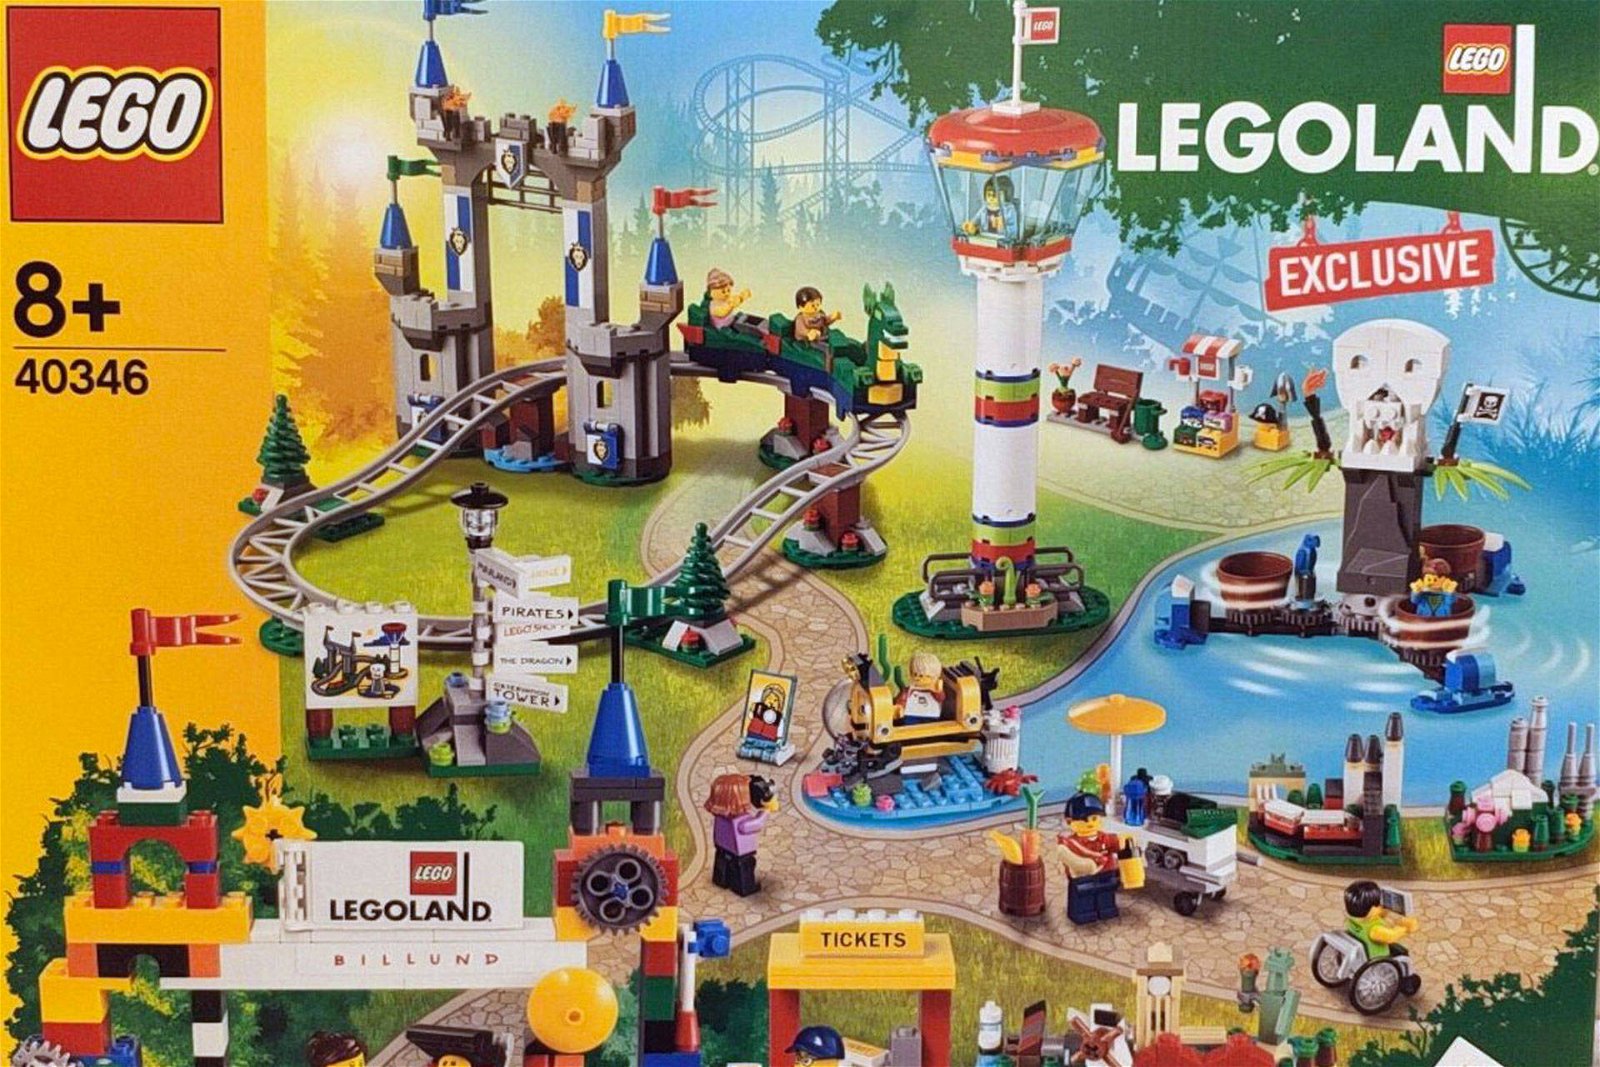 Immagine di Lego: in arrivo il set esclusivo dedicato a Legoland